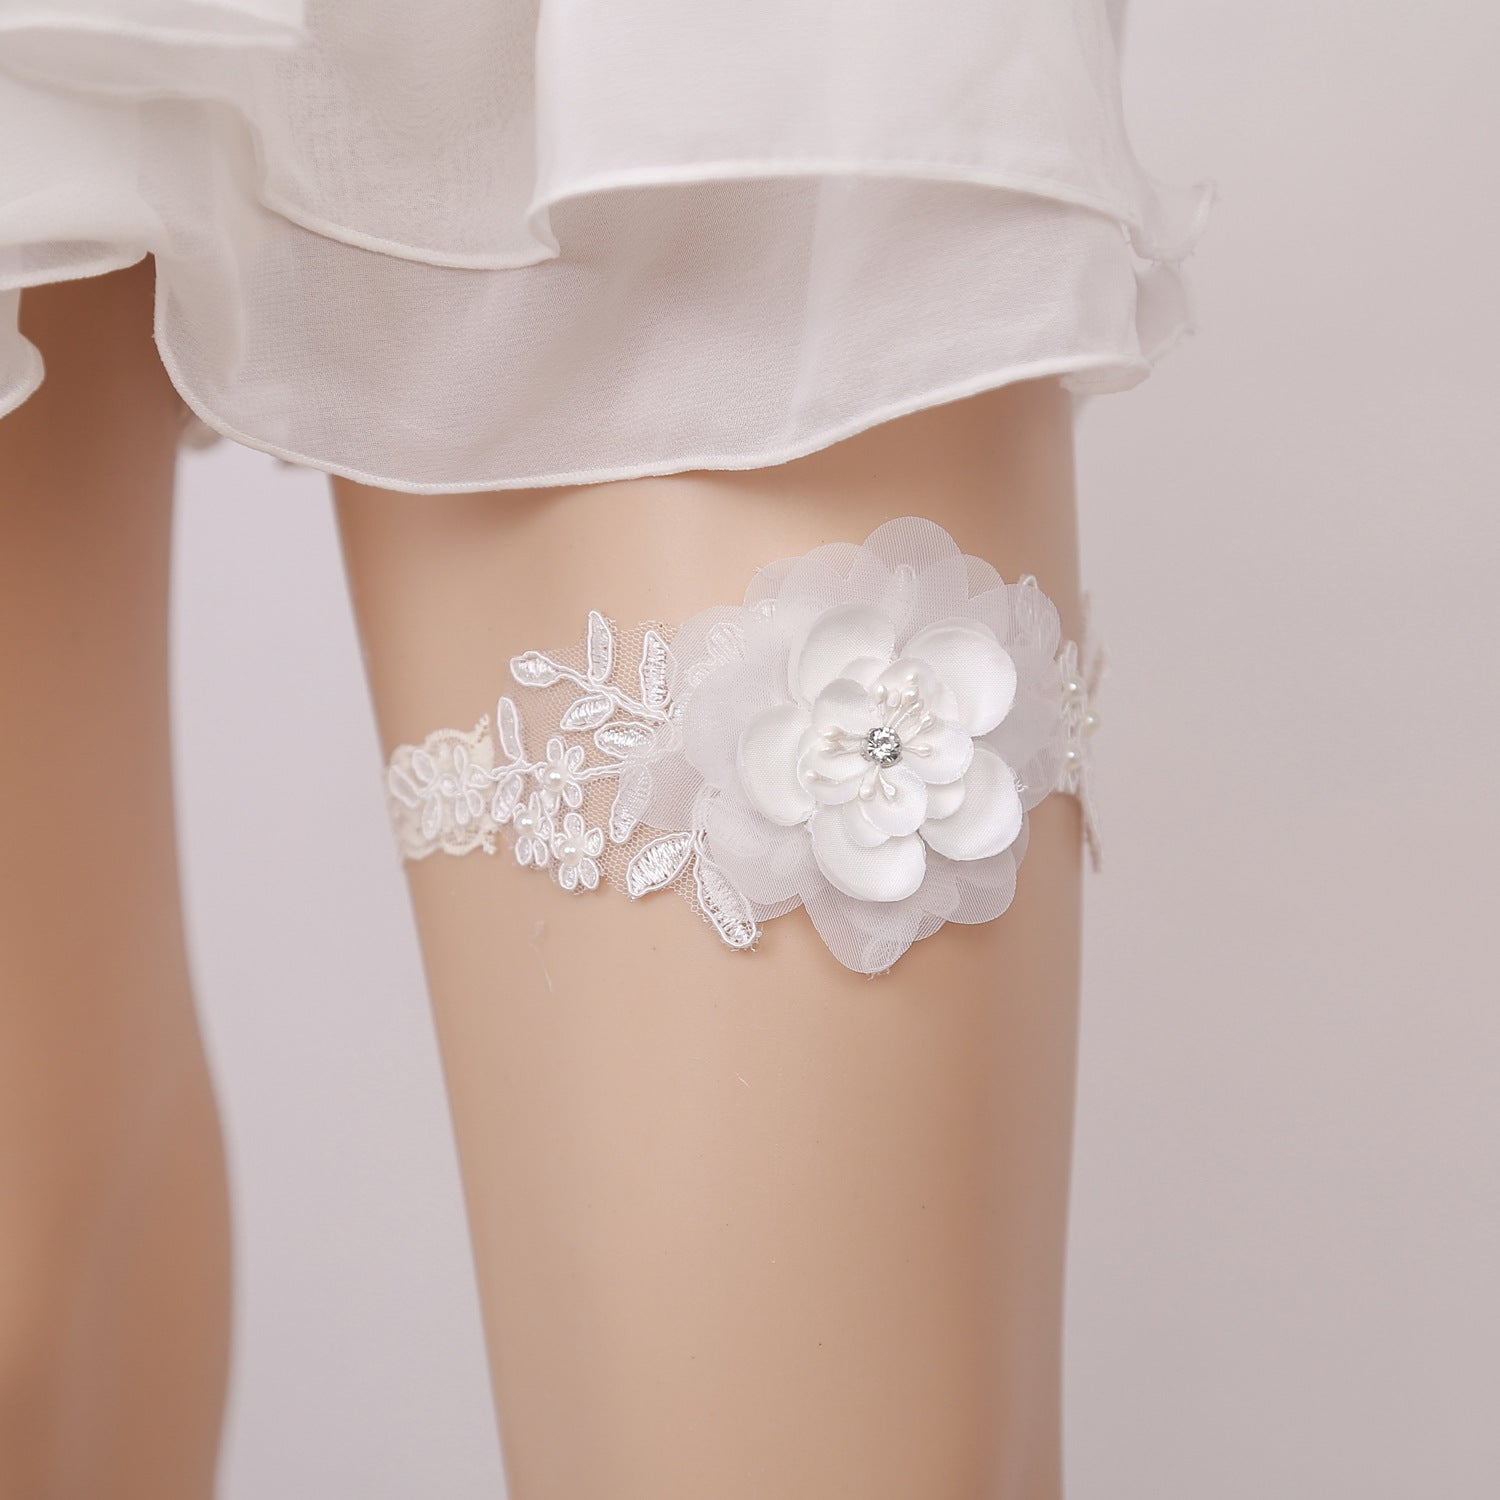 Bridal garter rhinestone flower wedding accessories